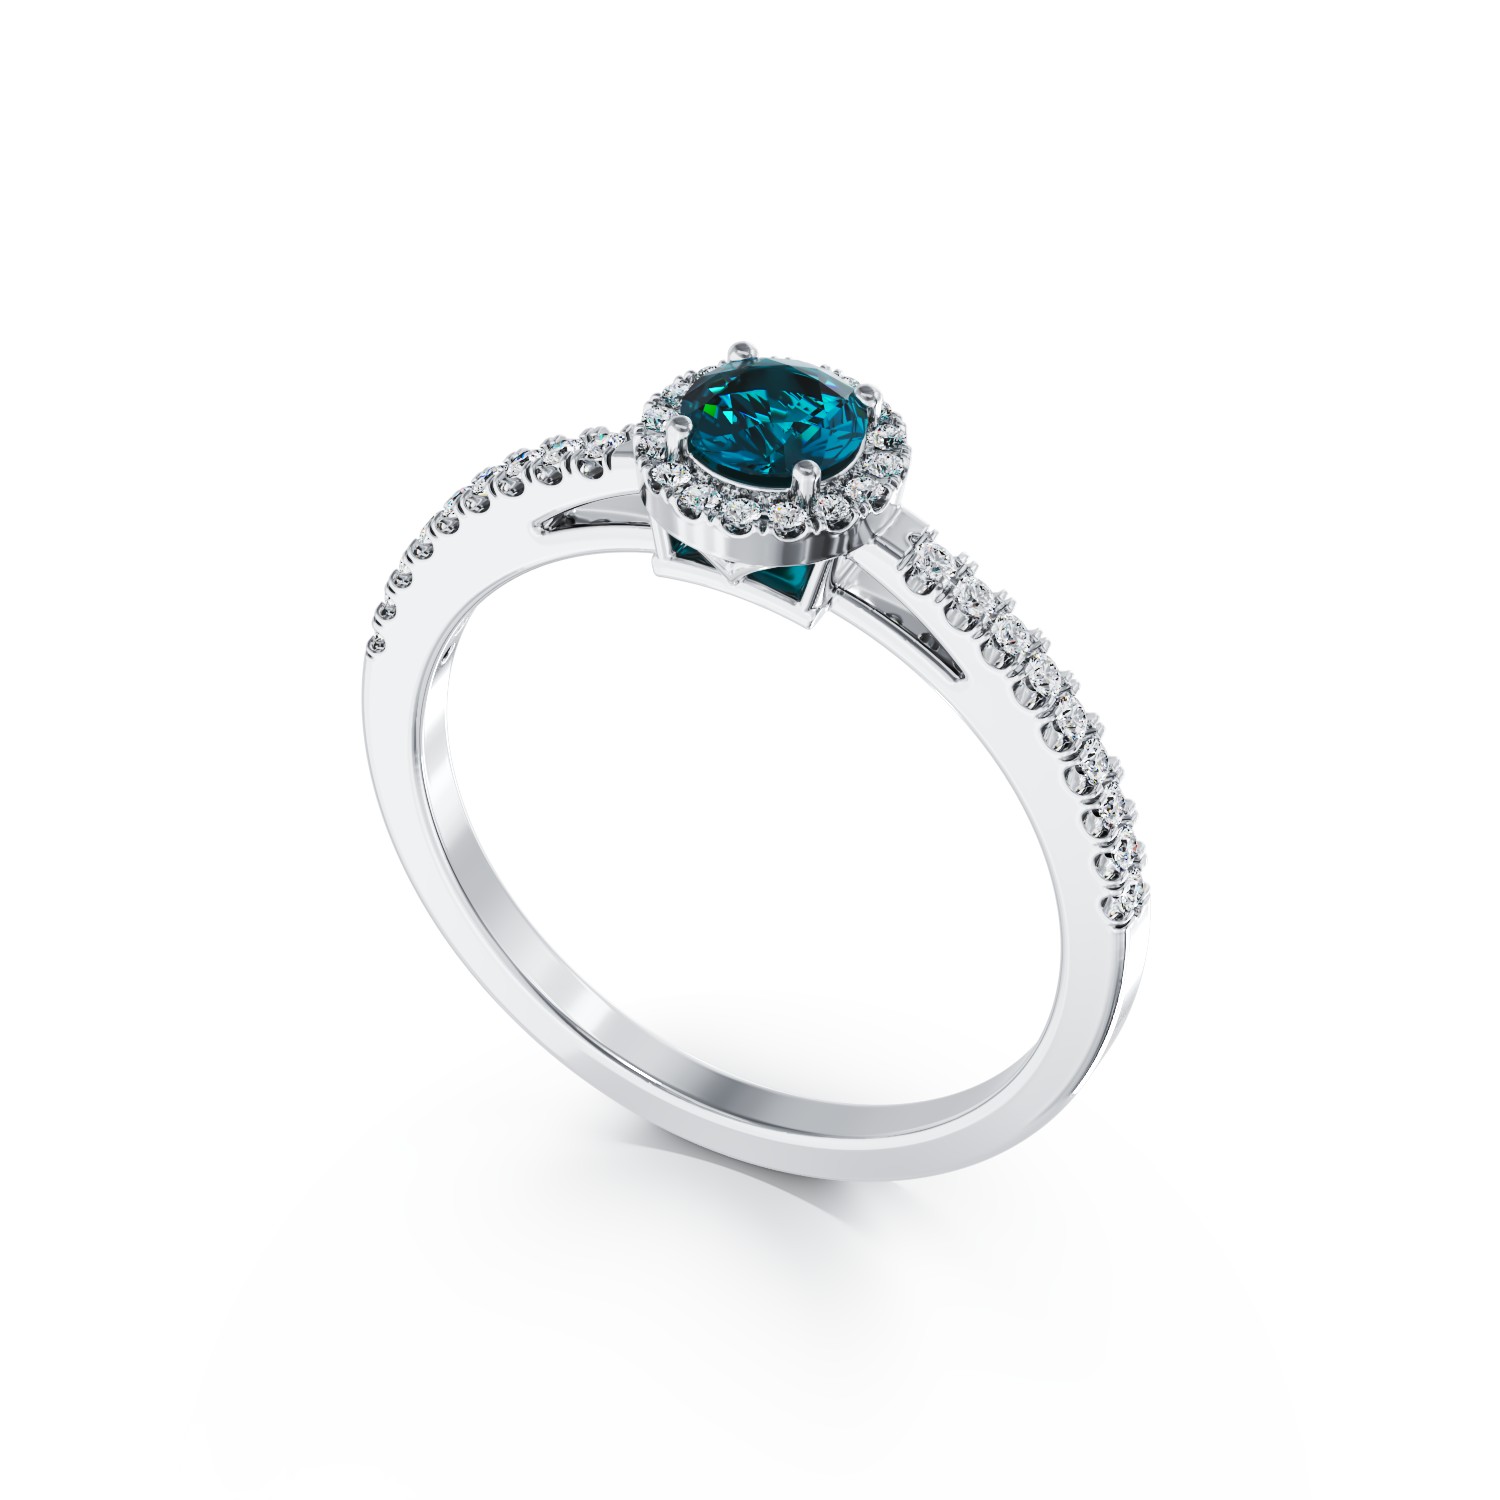 Inel de logodna din aur alb de 18K cu diamant albastru de 0.41ct si diamante transparente de 0.22ct